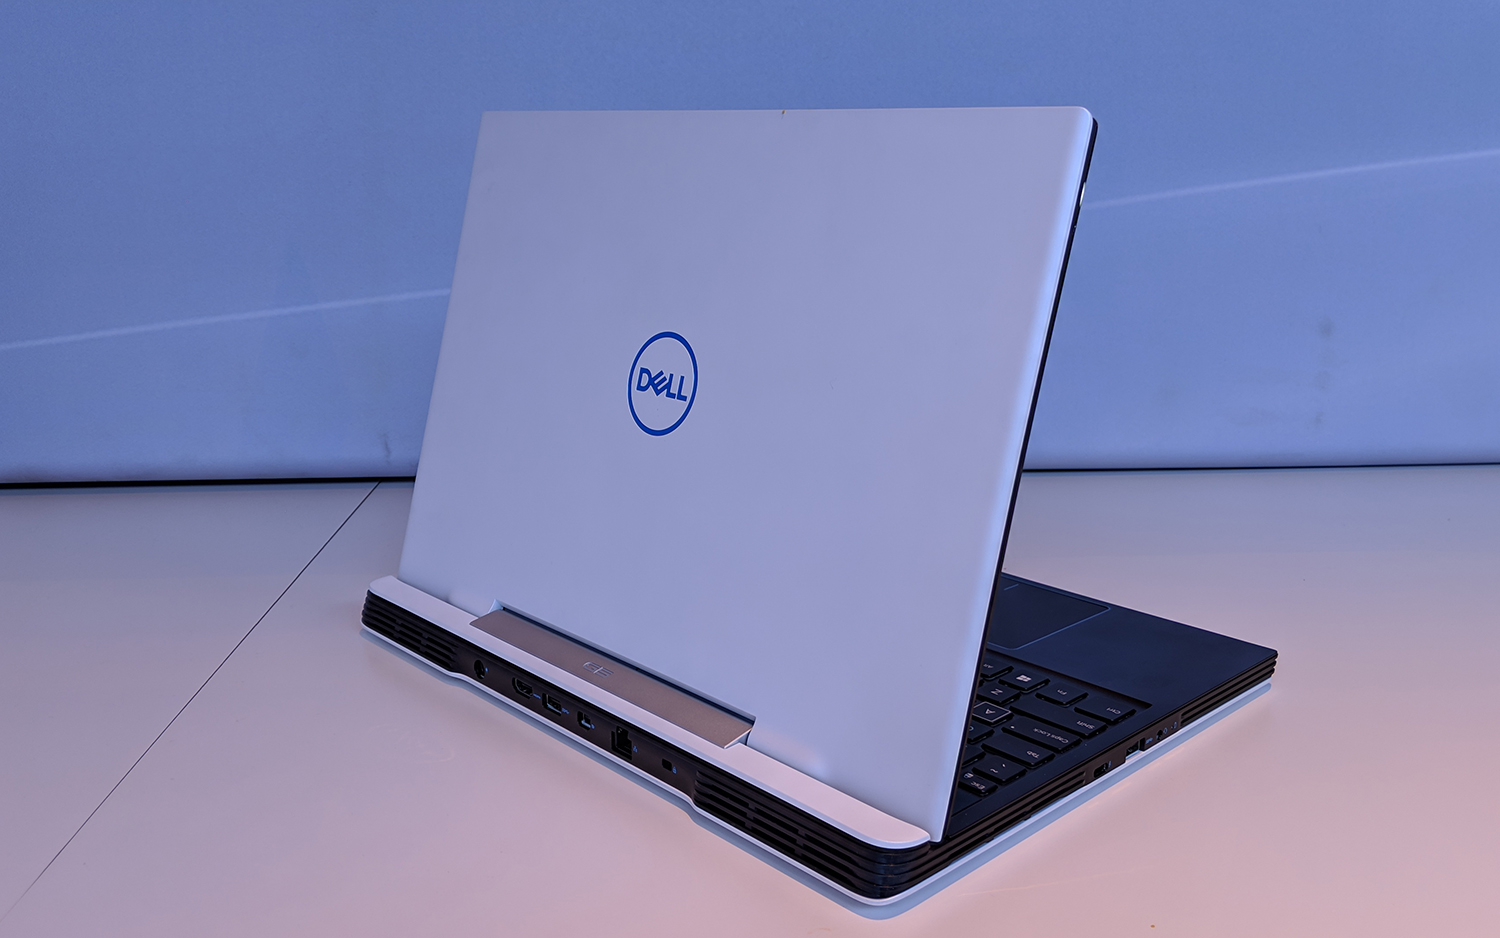 Dell chính thức bán
Gaming G-Series 2019 tại thị trường Việt Nam - Laptop gaming
dành cho dân văn phòng